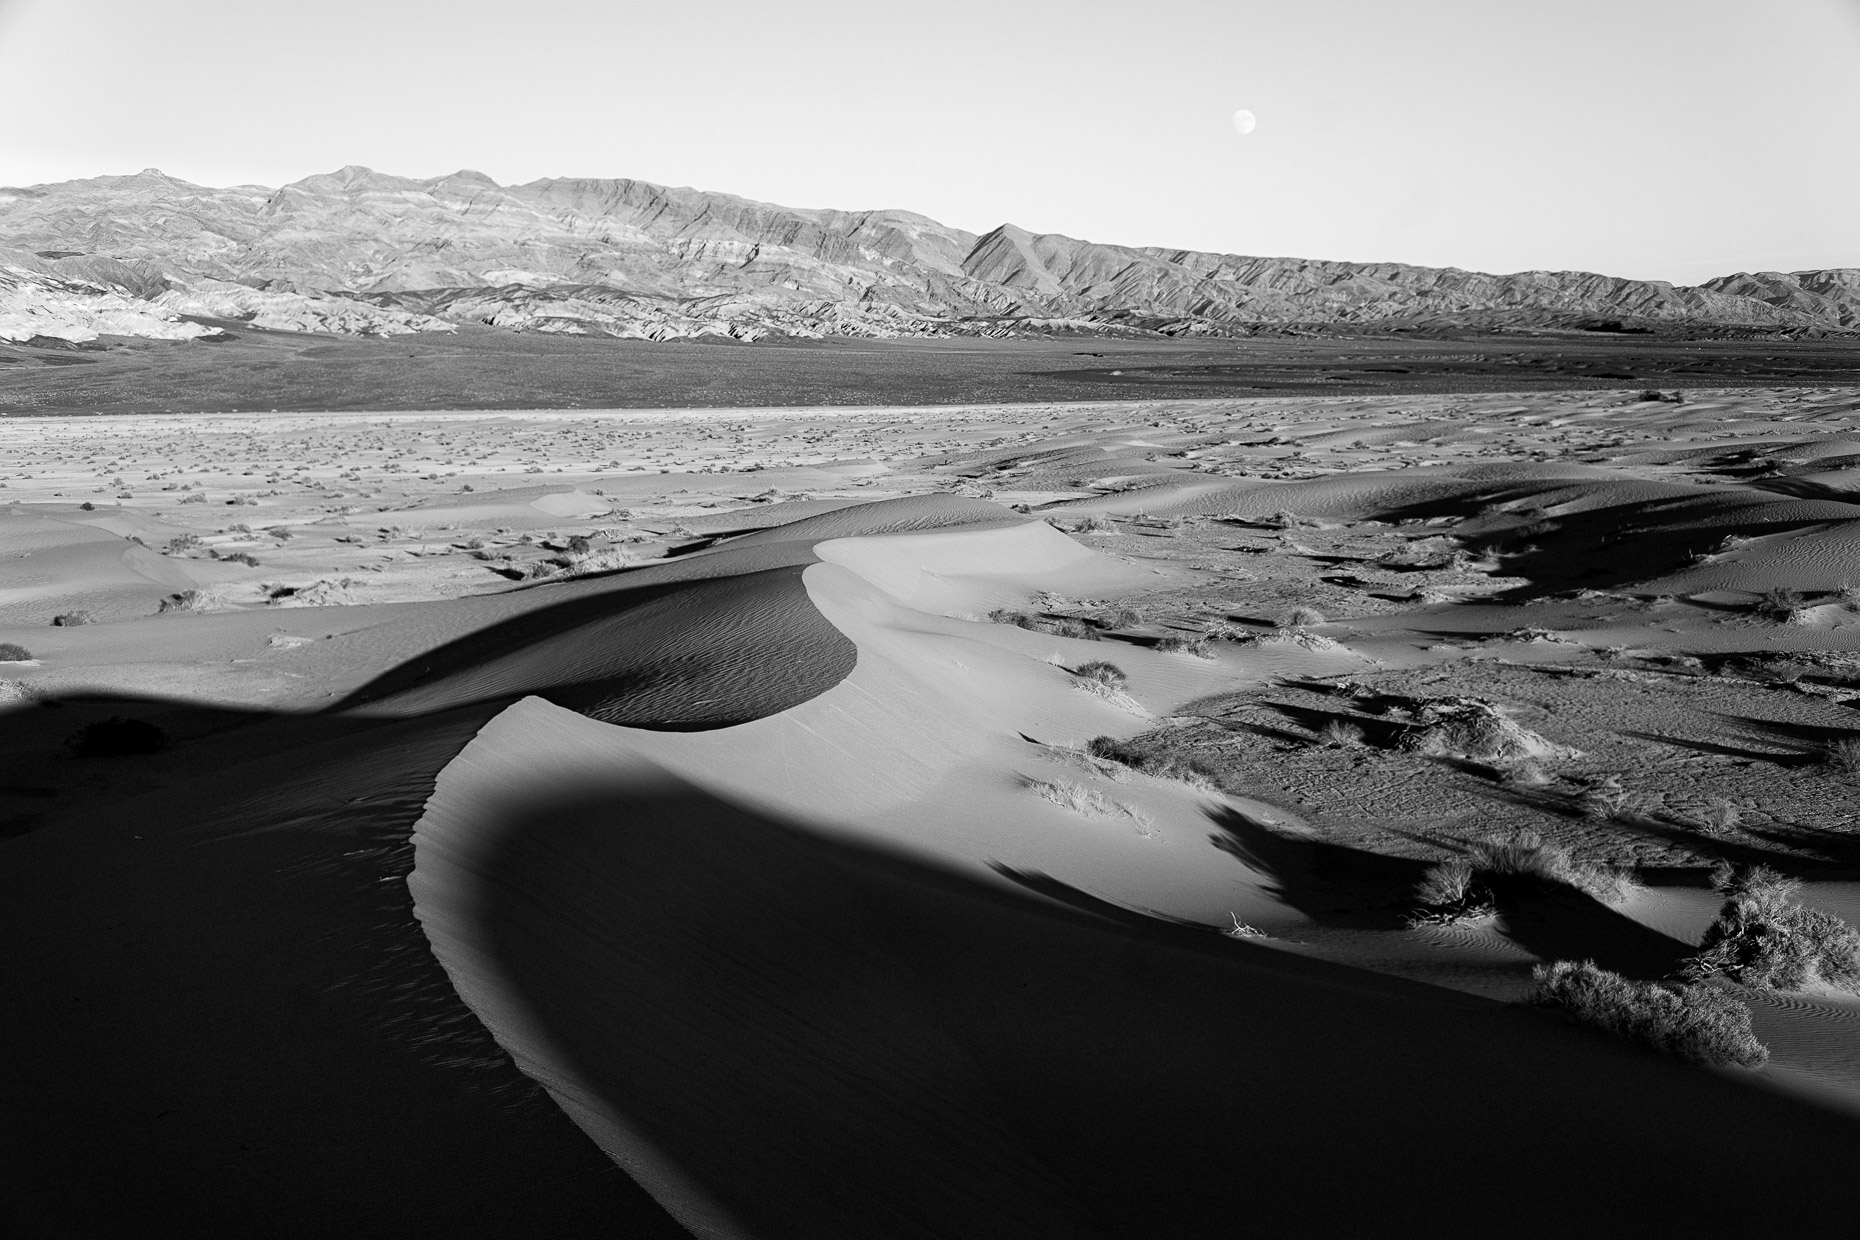 Mesquite Dunes